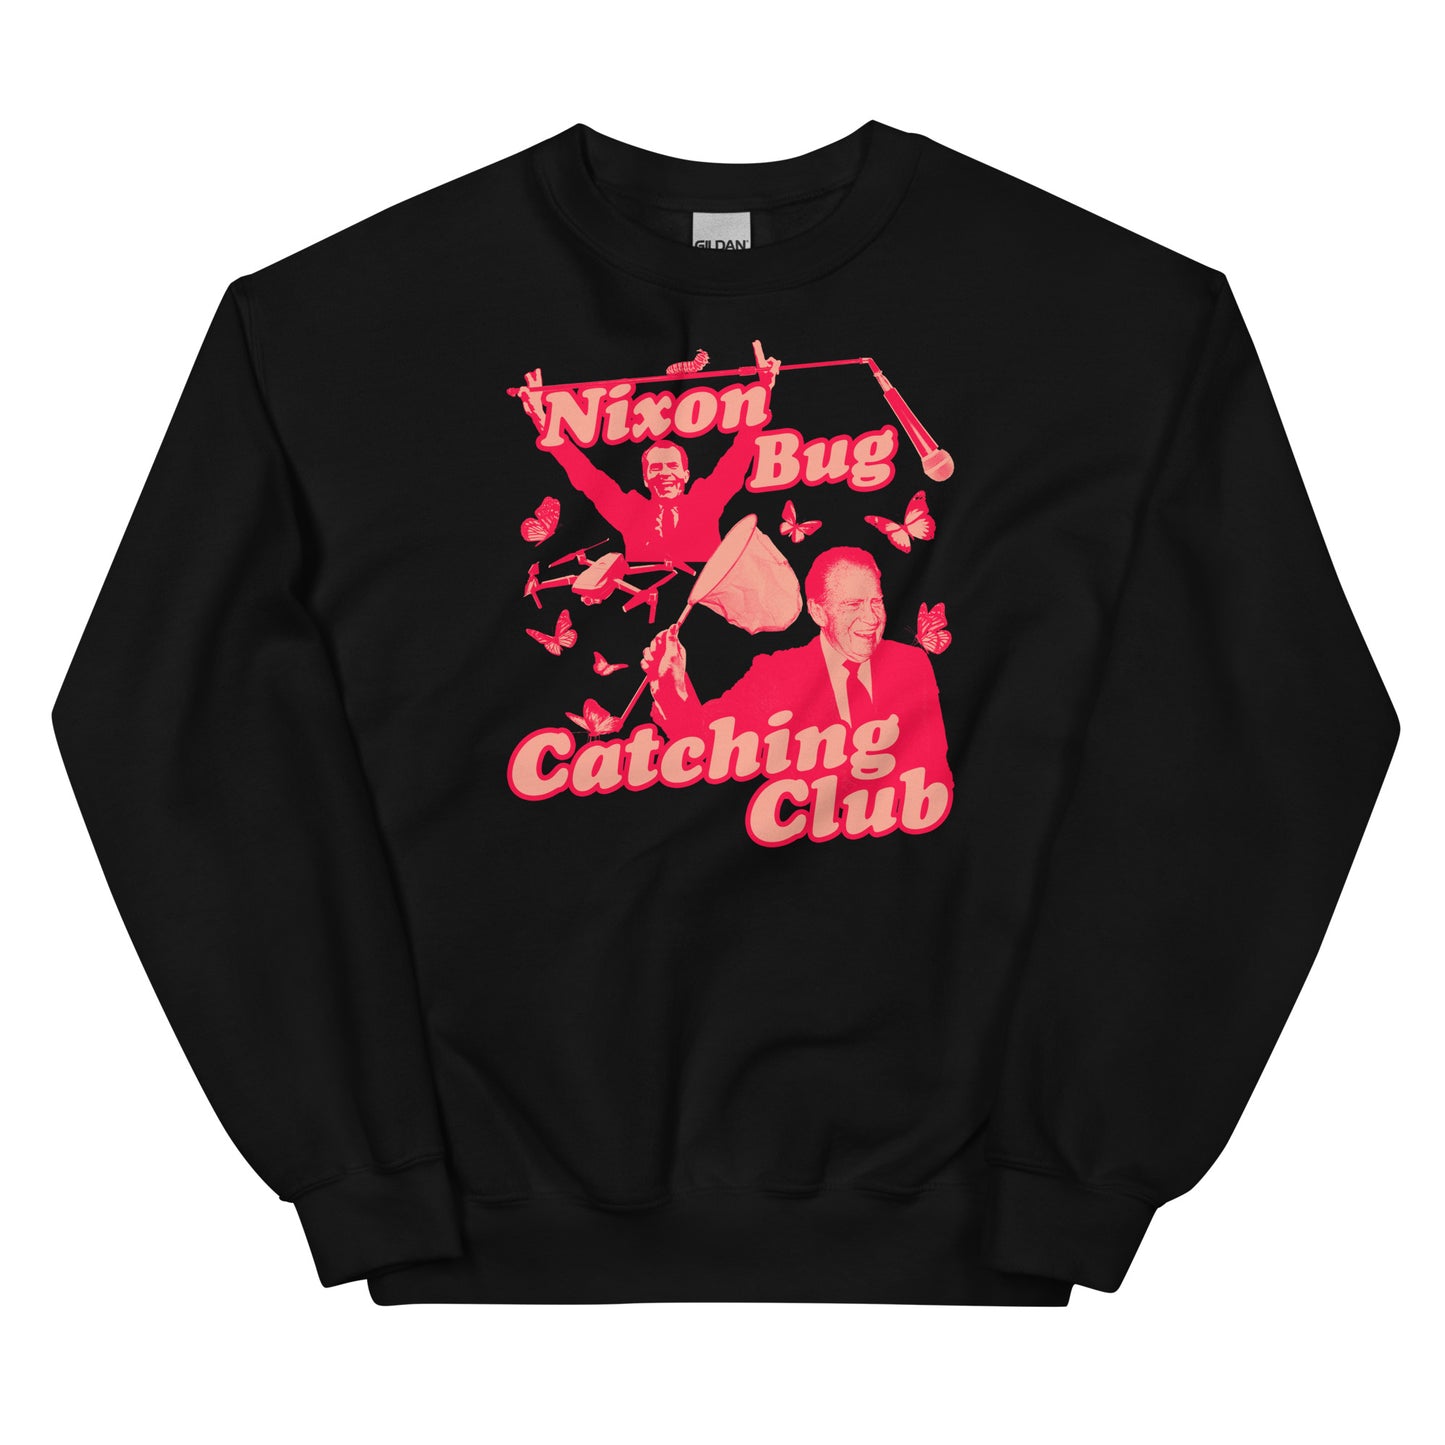 Nixon Bug Catching Club Unisex Sweatshirt